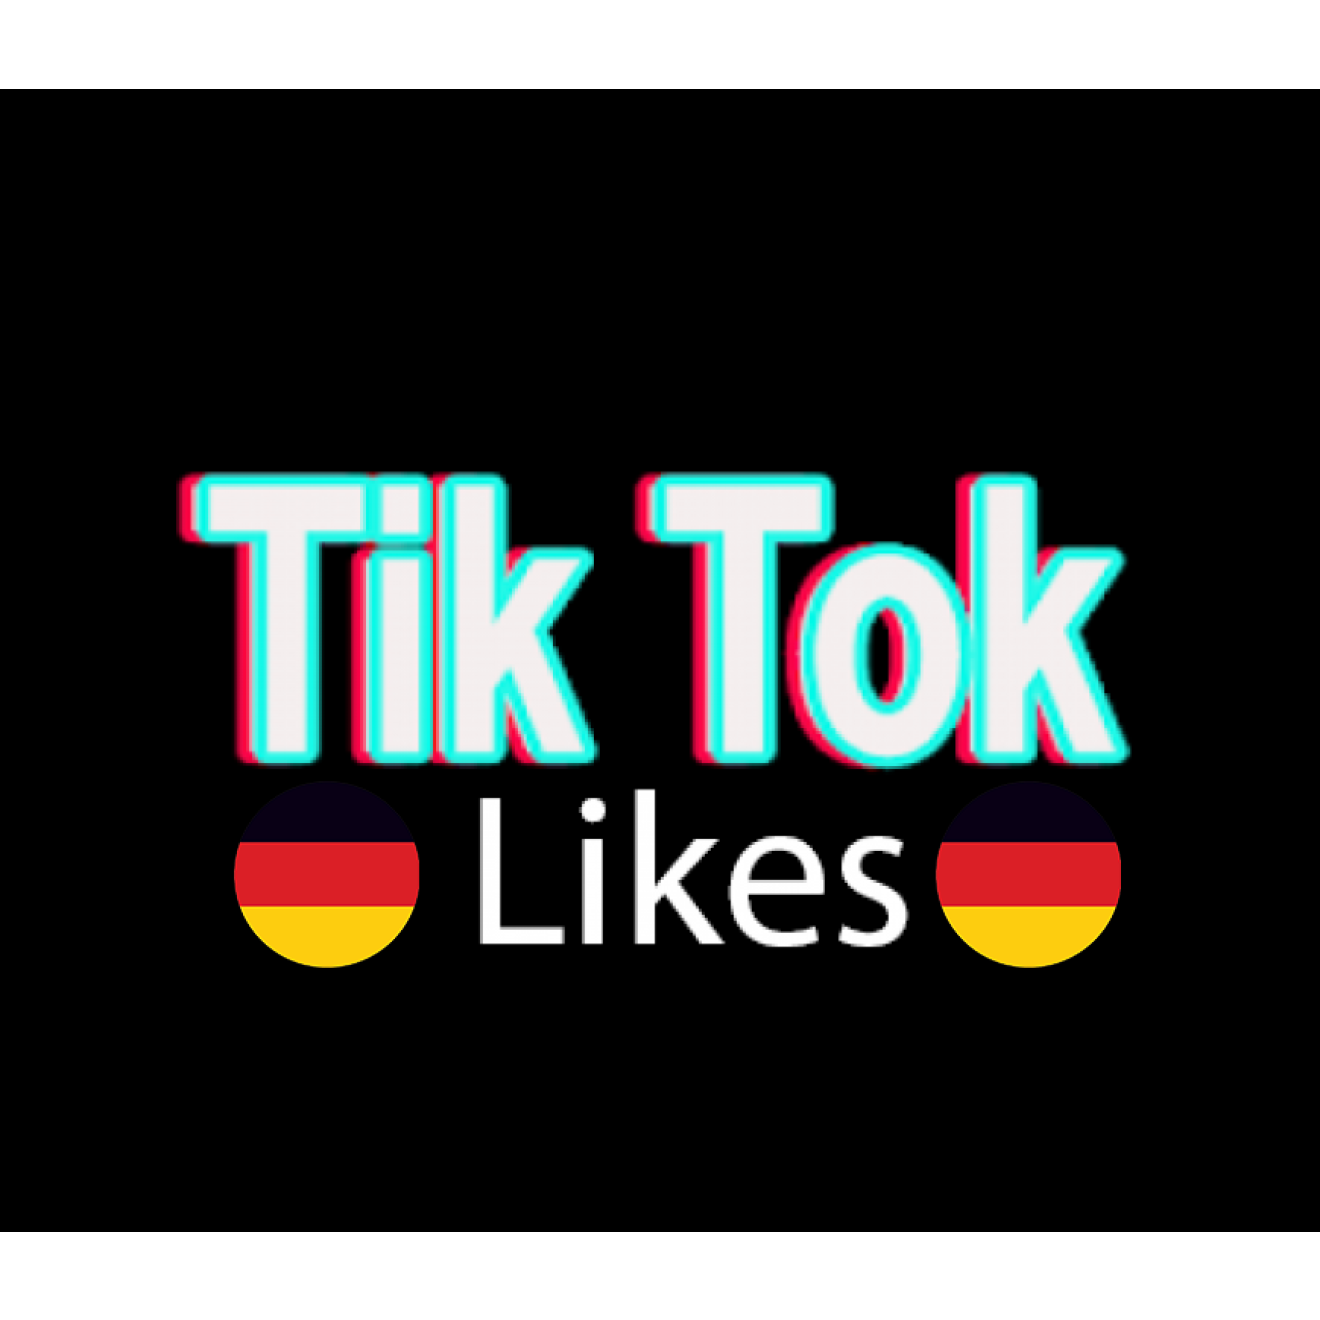 10 Deutsche TikTok Post Likes / Gefällt mir Angaben für Dich